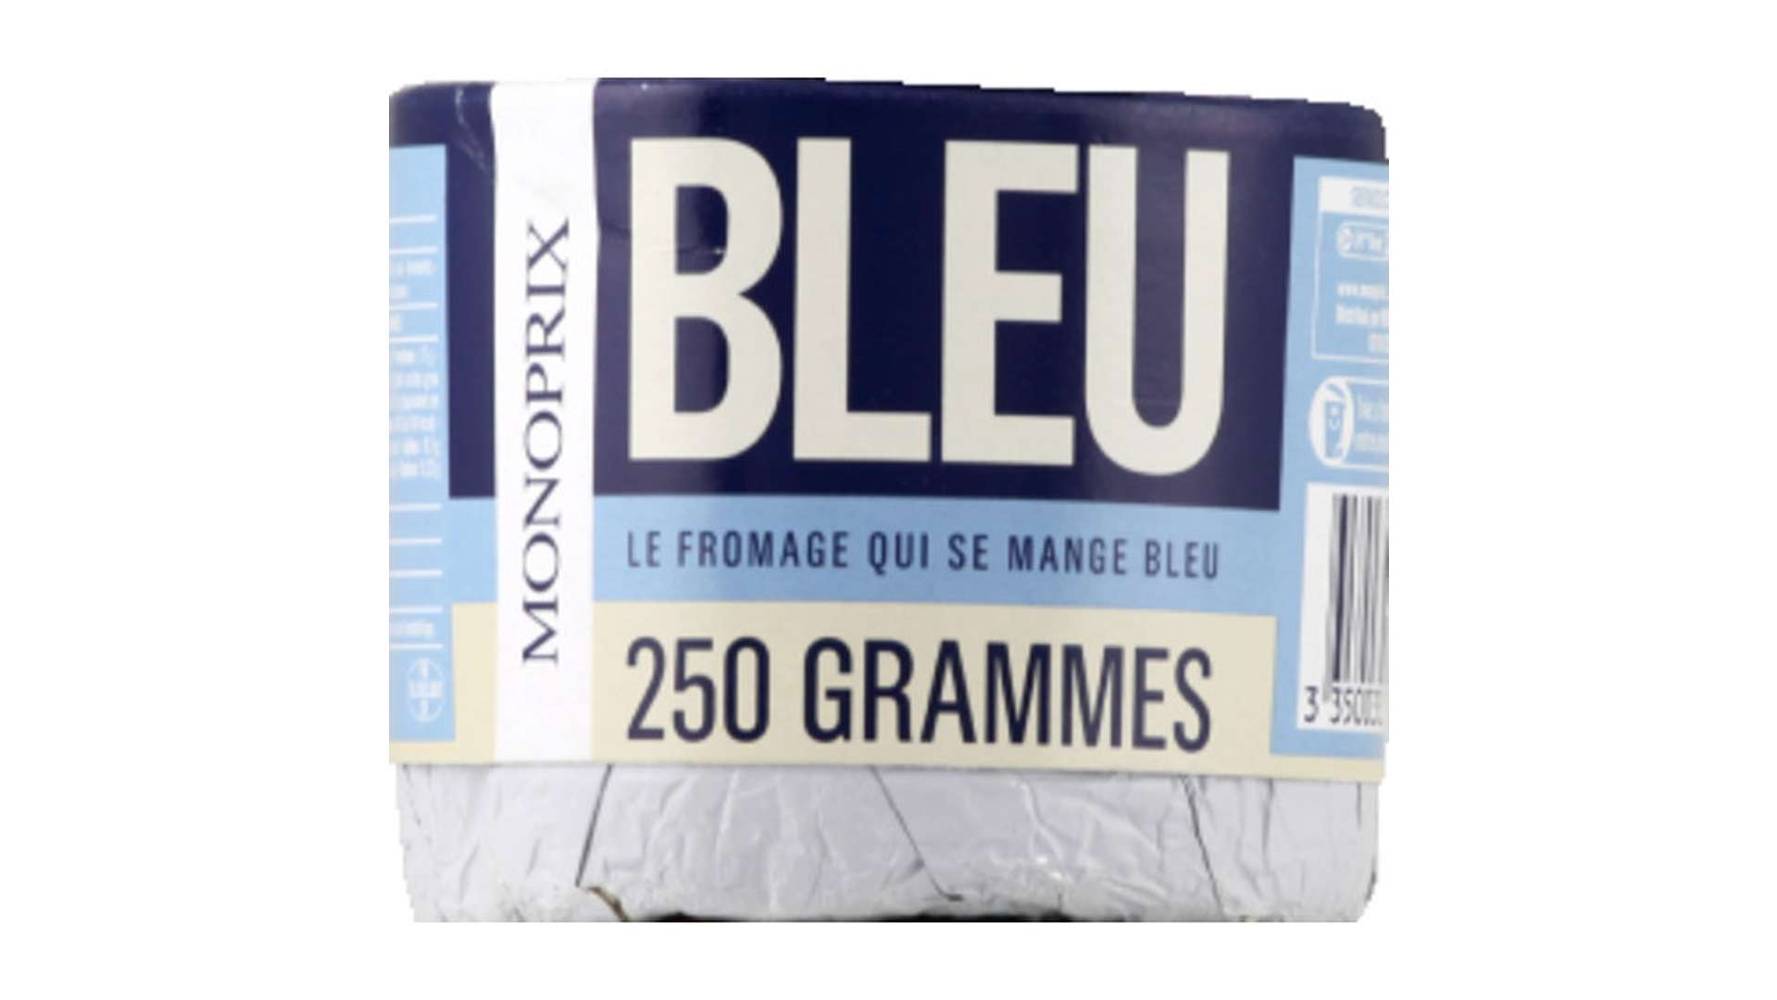 Monoprix Bleu au lait pasteurisé Le fromage de 250g